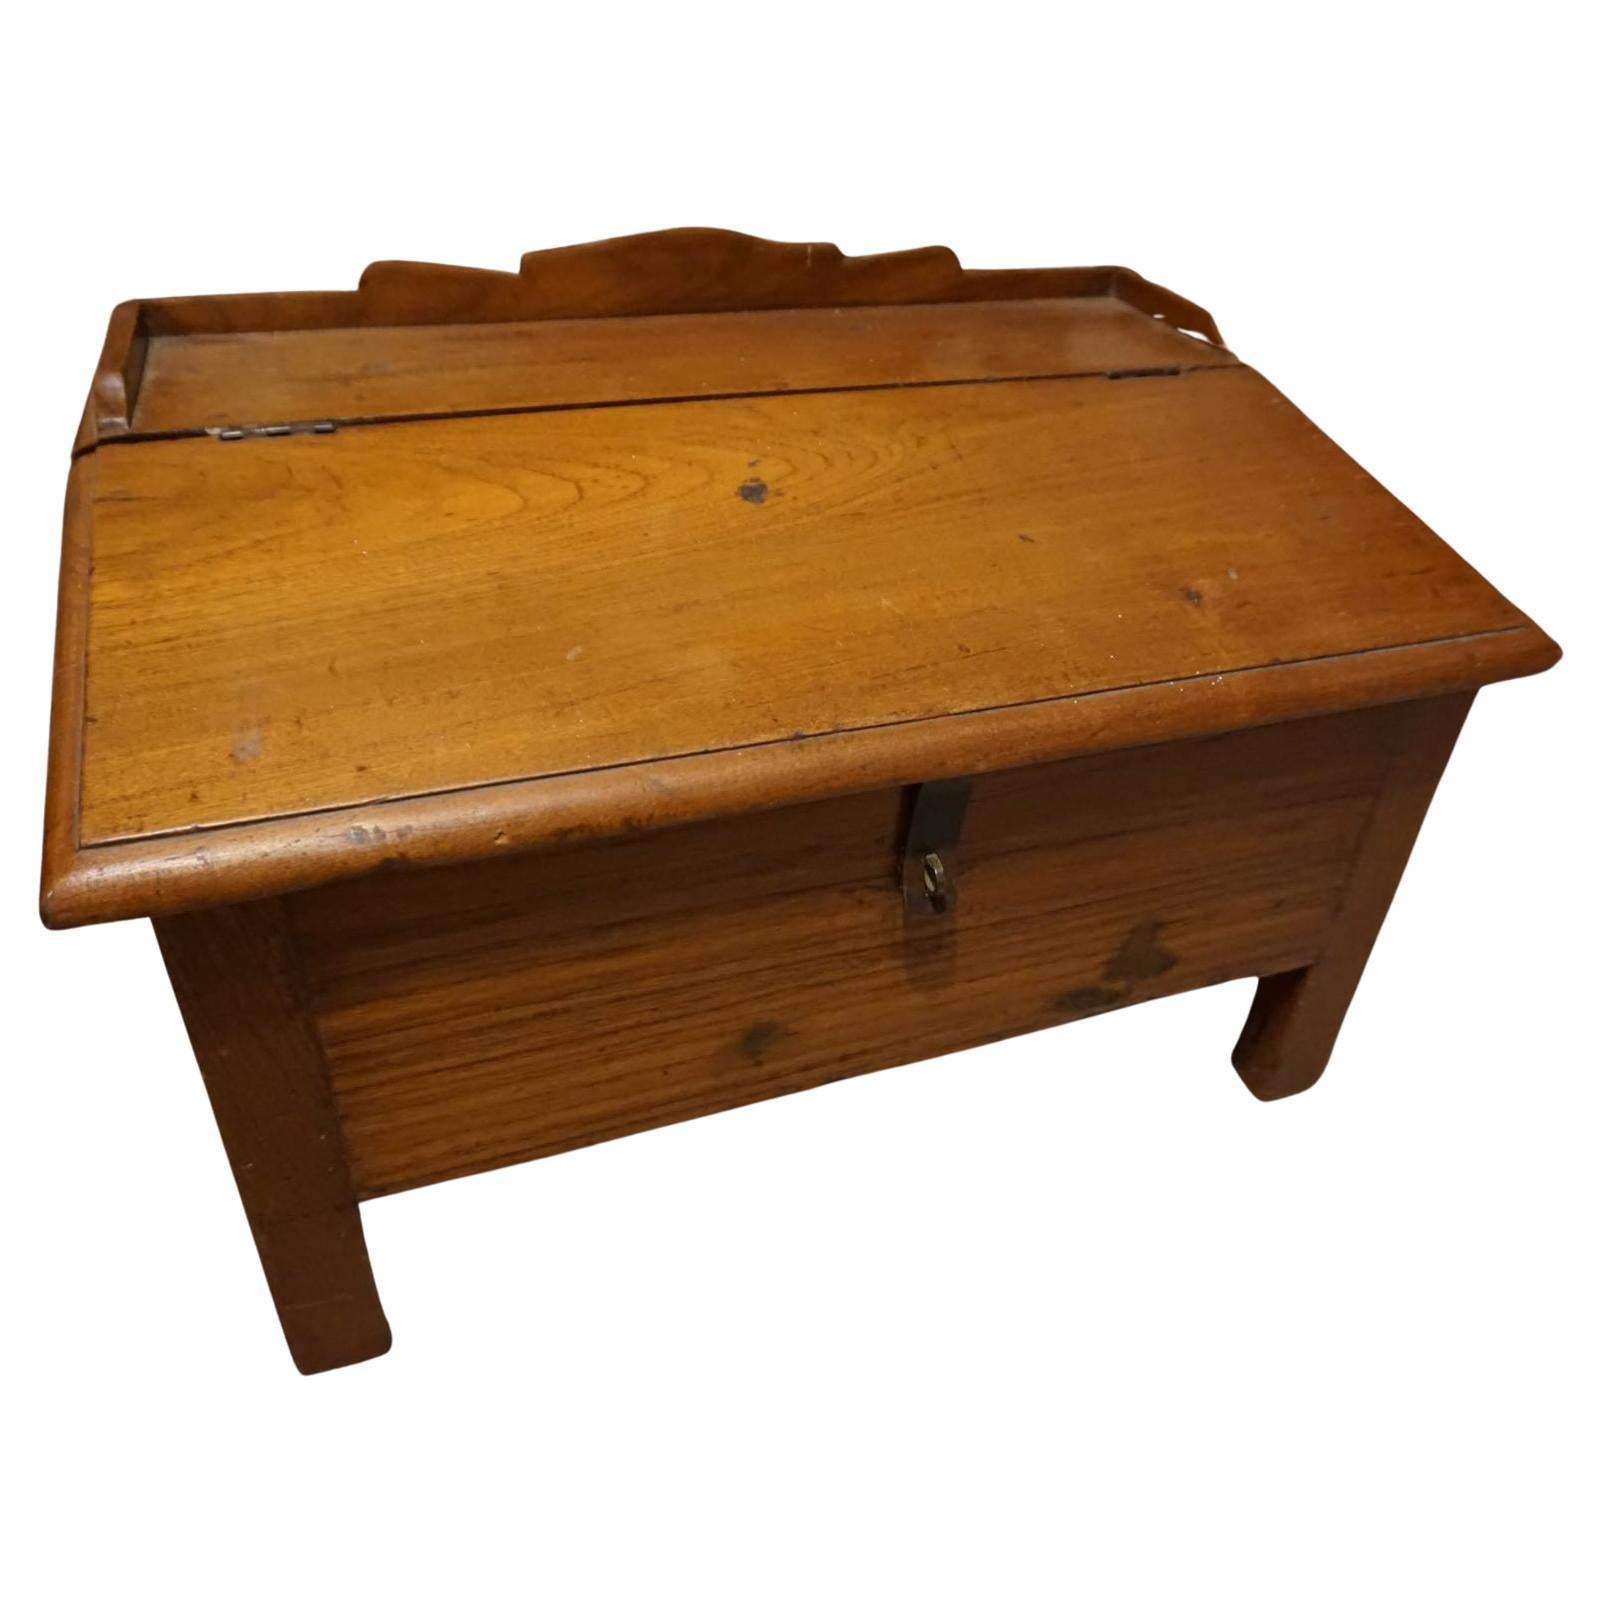 Rare 19th Century British India Solid Teak Slant Lid Floor Scholar's Desk For Sale